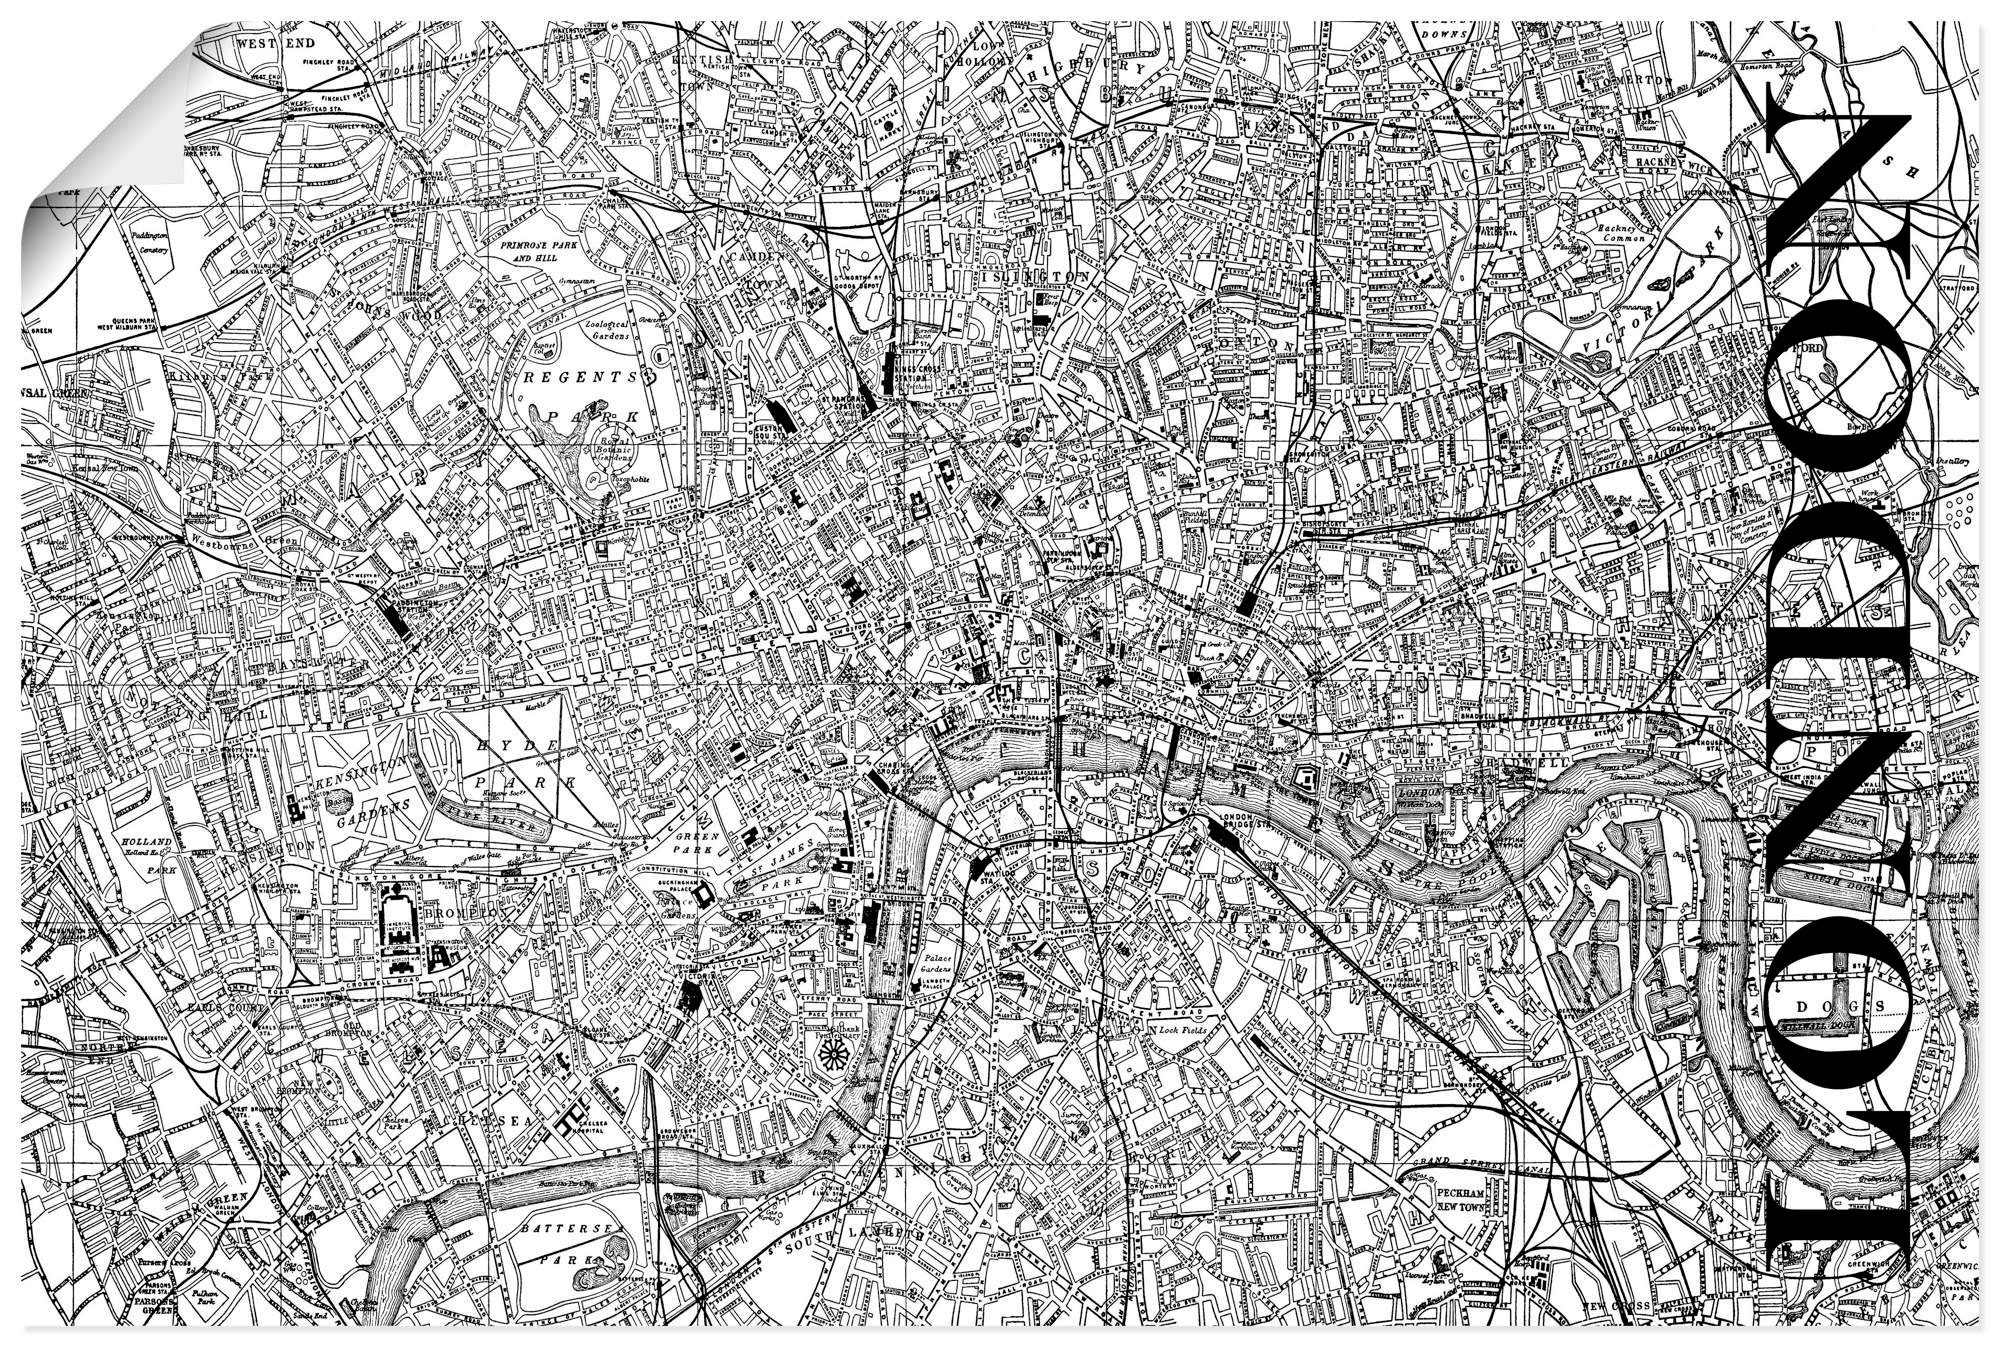 Artland Artprint Londen Kaart straten kaart in vele afmetingen & productsoorten - artprint van aluminium / artprint voor buiten, artprint op linnen, poster, muursticker / wandfolie